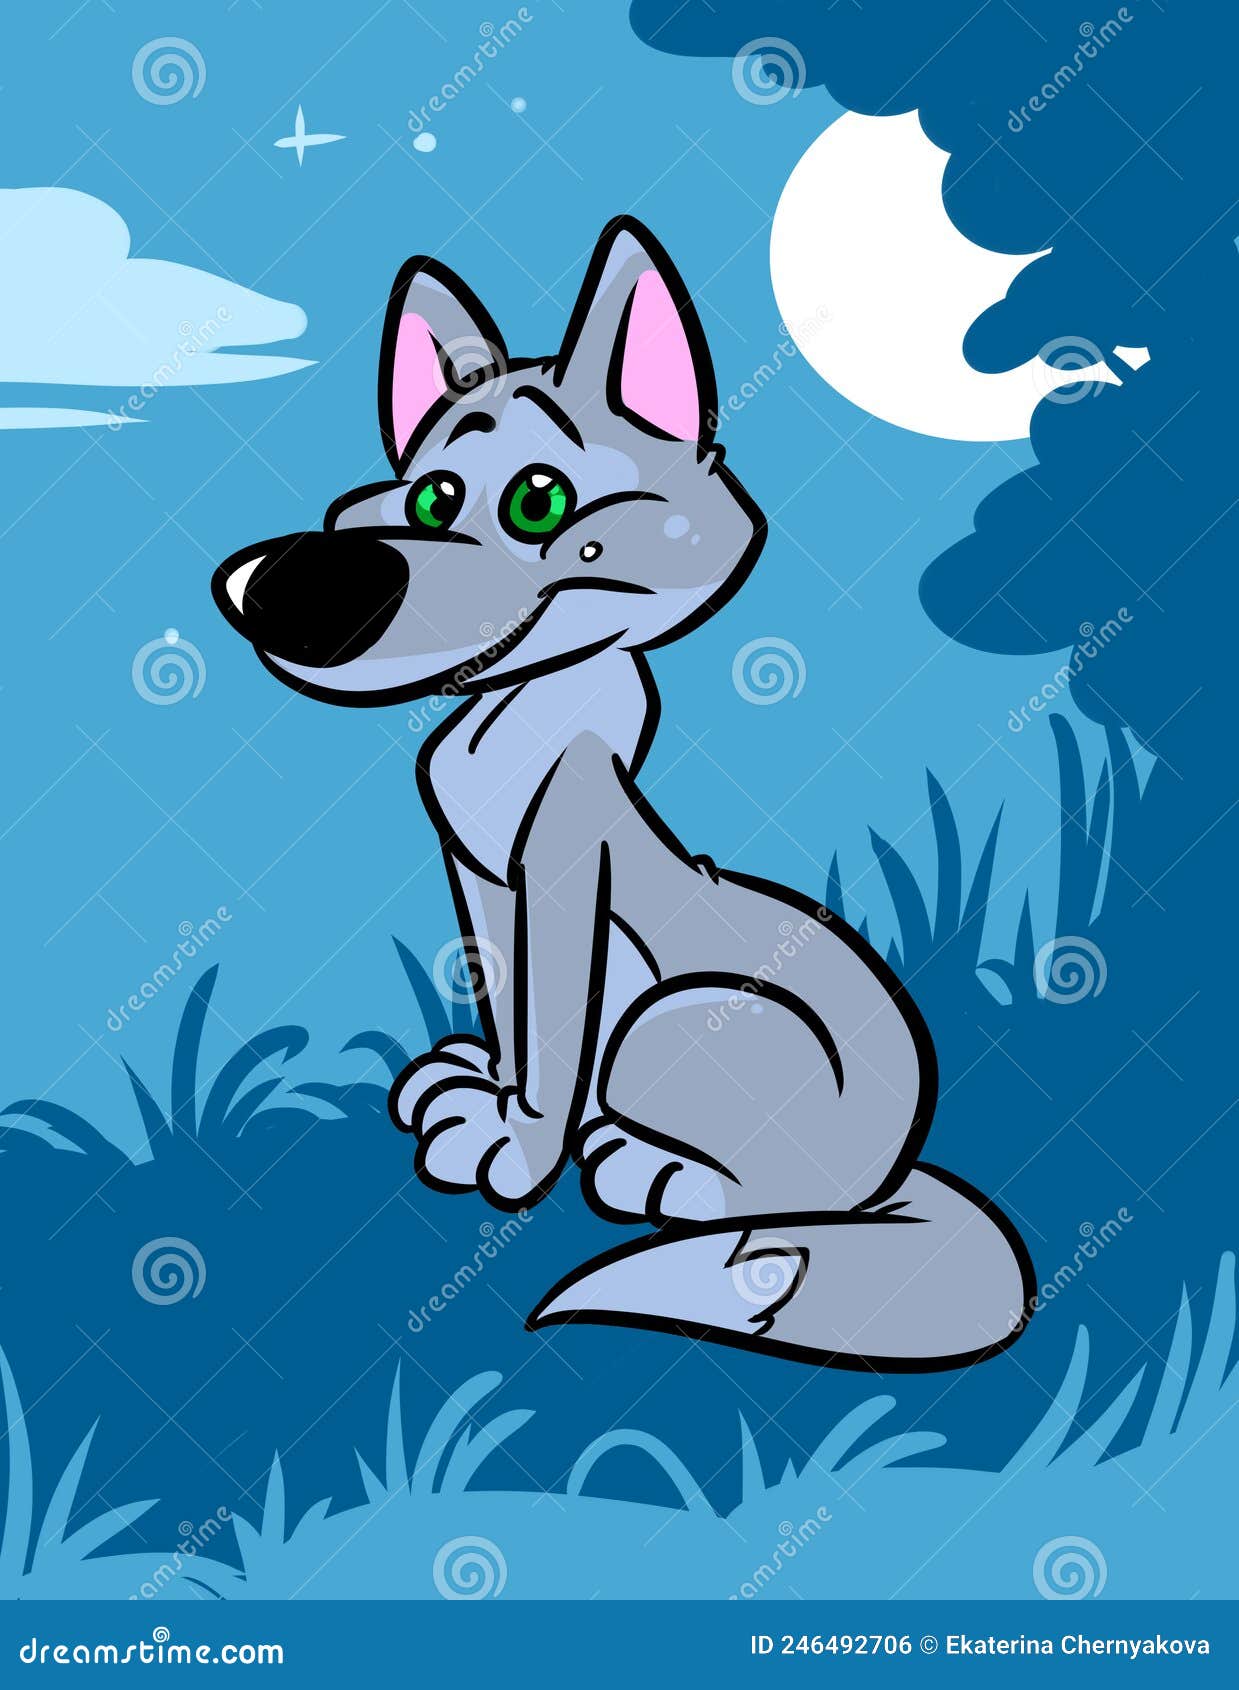 Personagem de desenho animado wolf